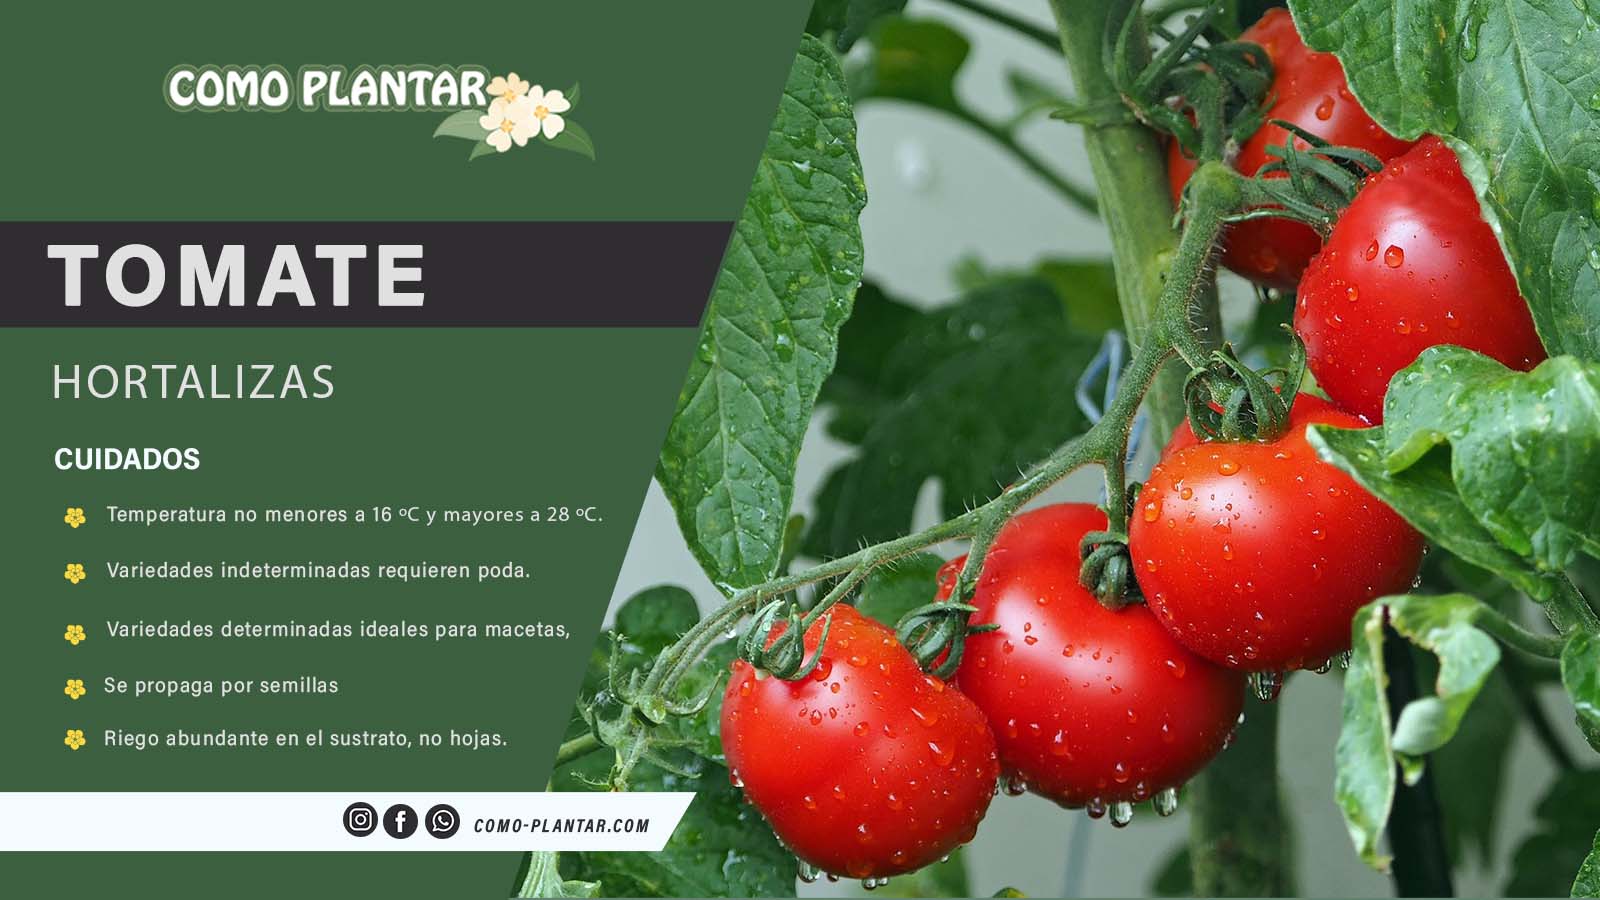 asi-son-las-hojas-de-la-planta-de-tomate-caracteristicas-y-cuidados